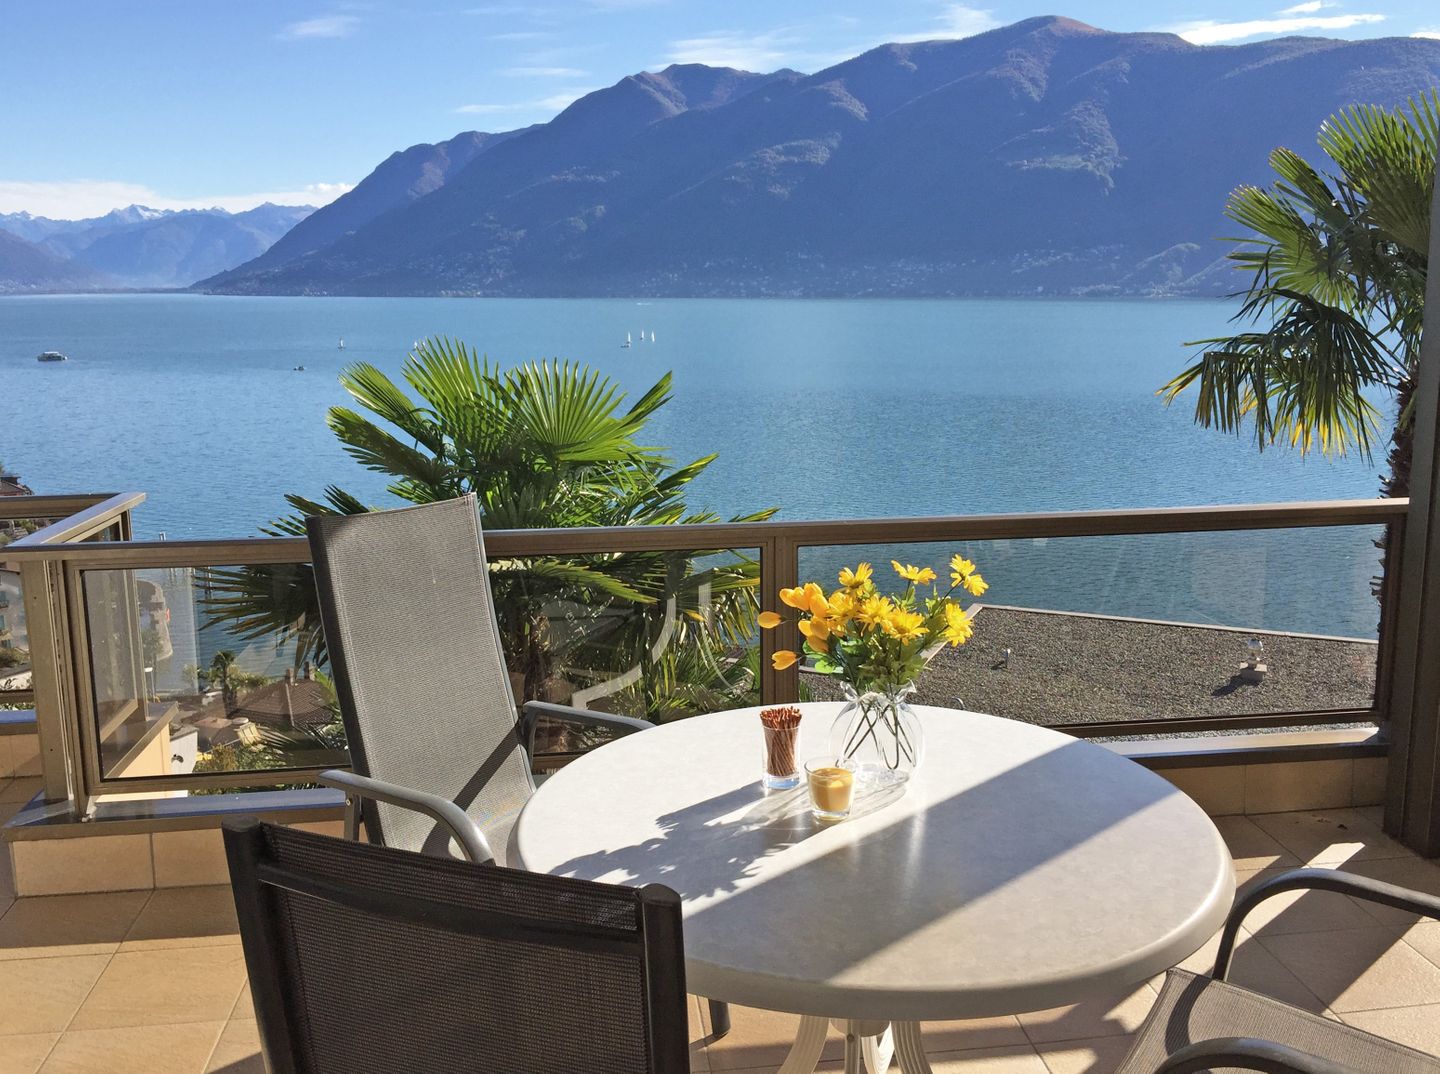 Ferienappartement mit fantastischem Seeblick   Lago Maggiore